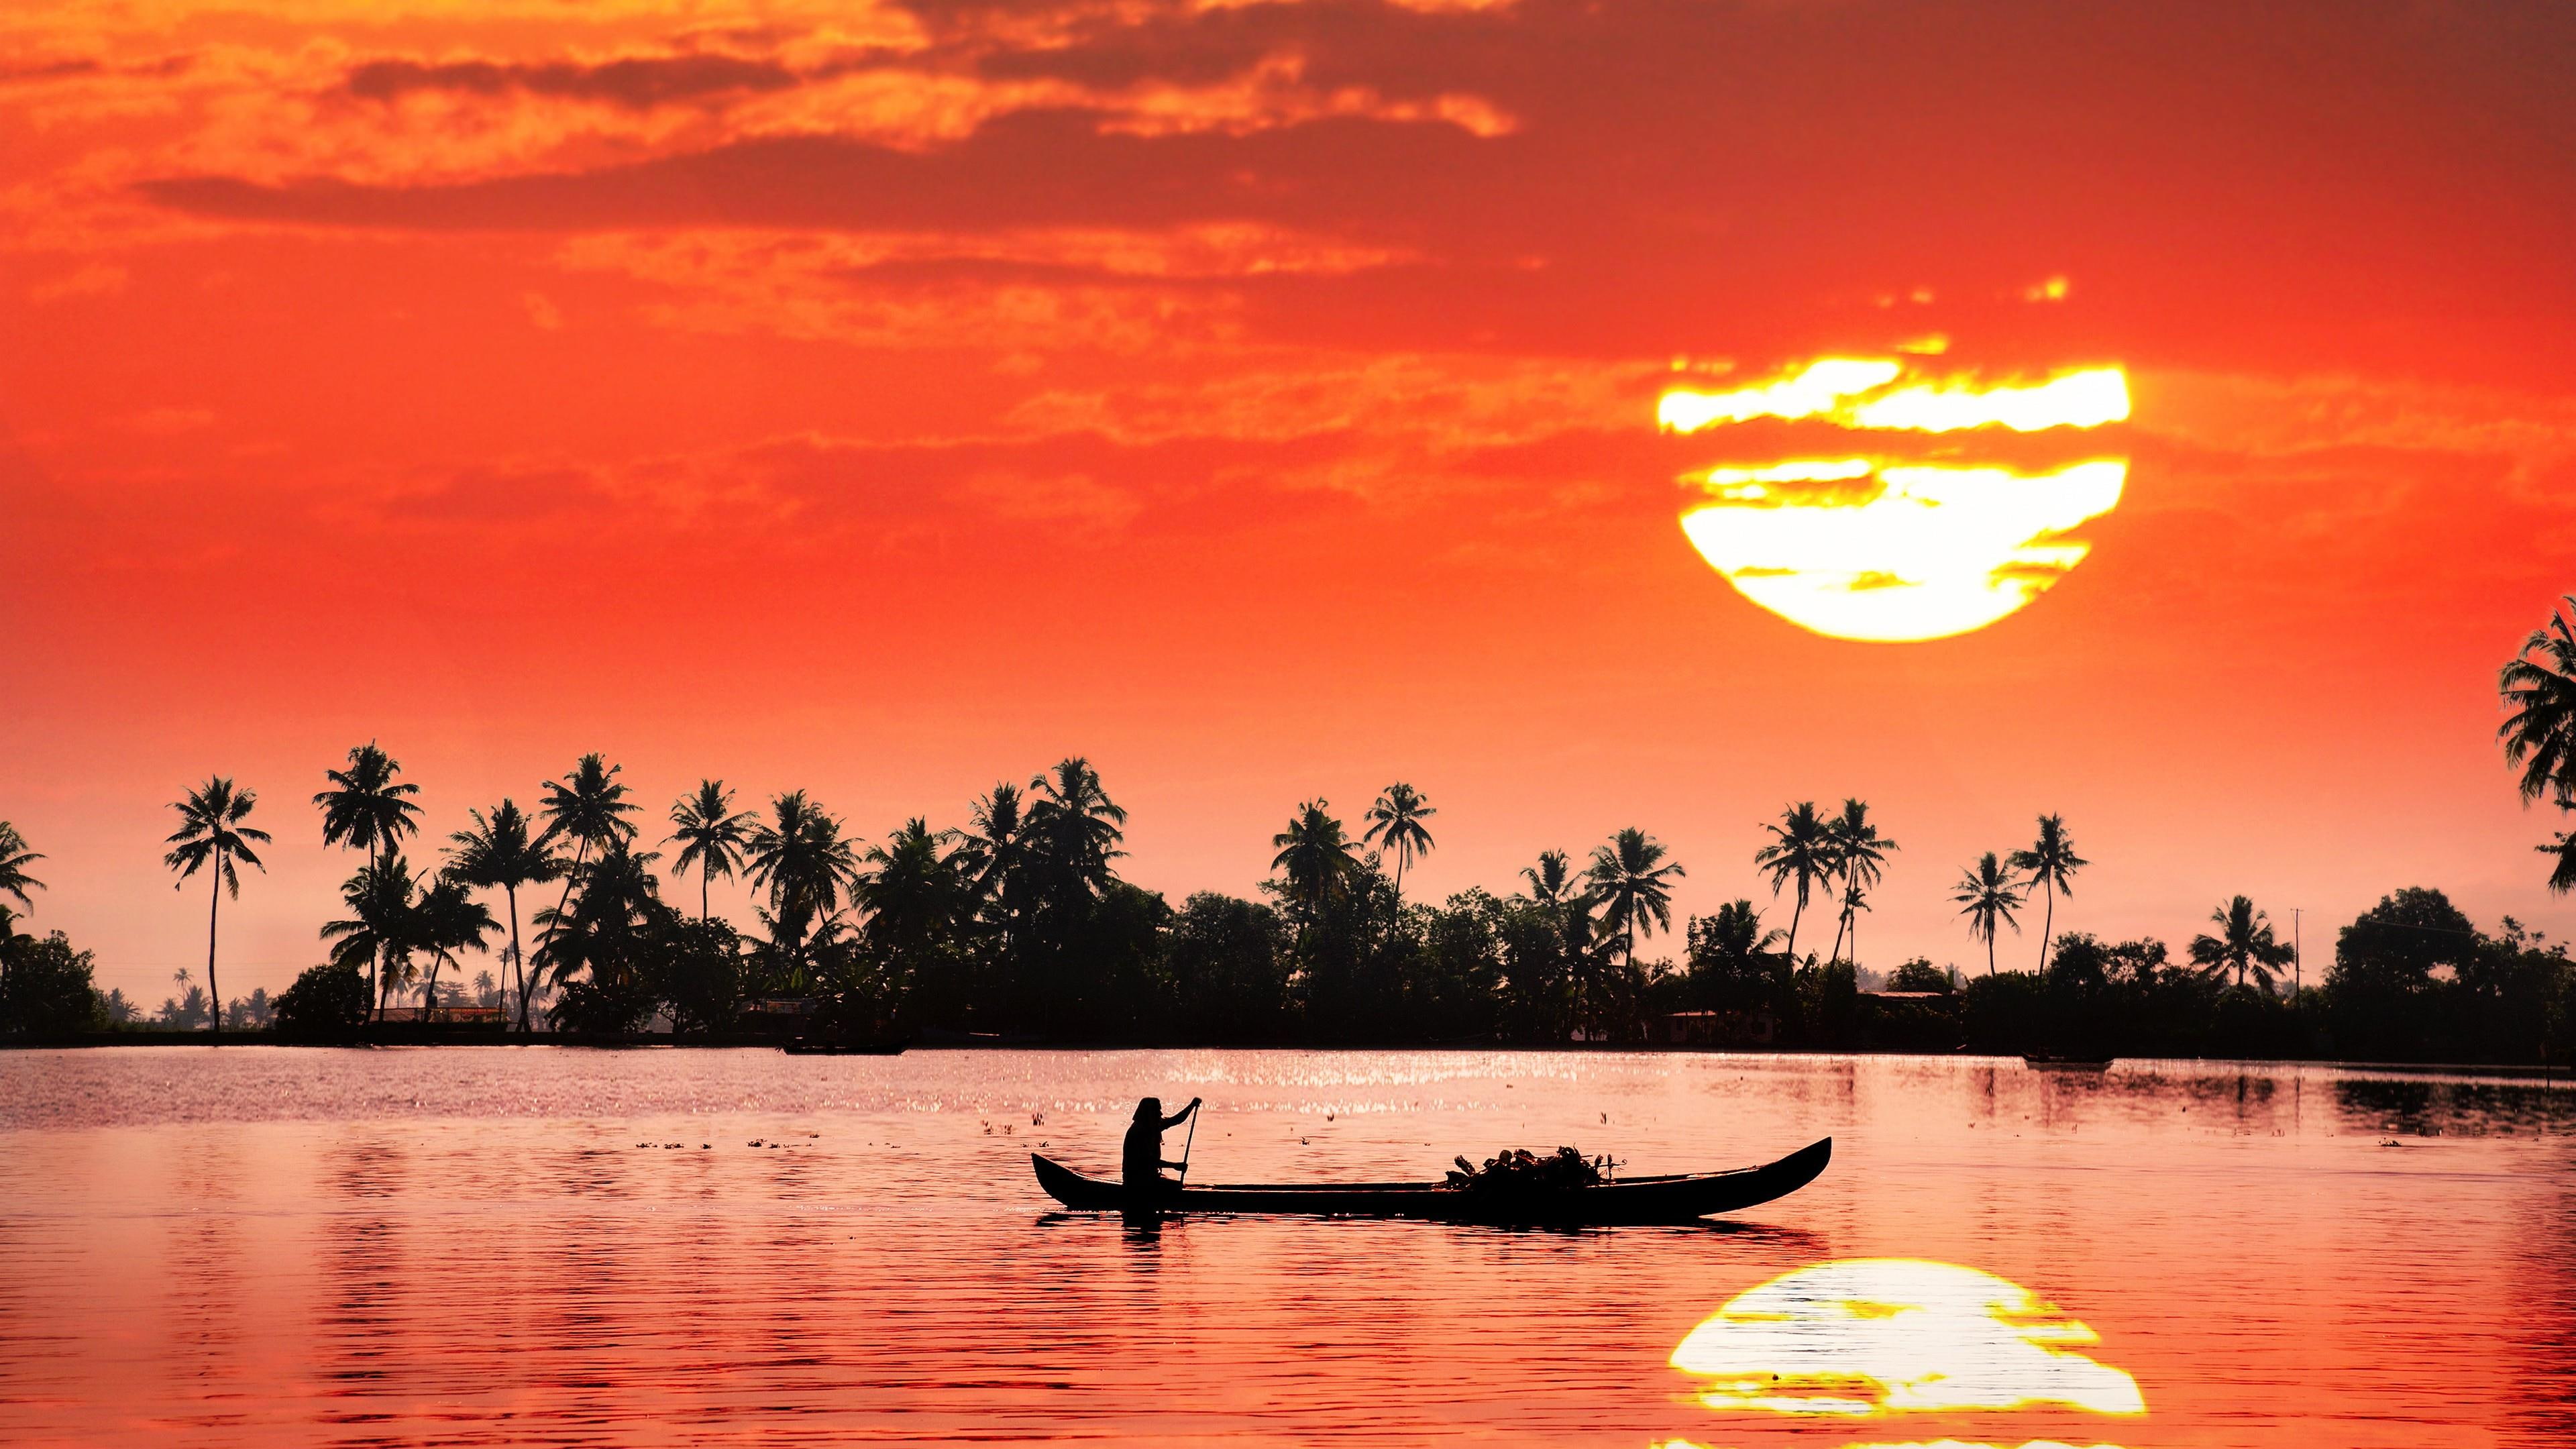 backwaters, red sunset, india, kochi, kerala backwaters, dawn